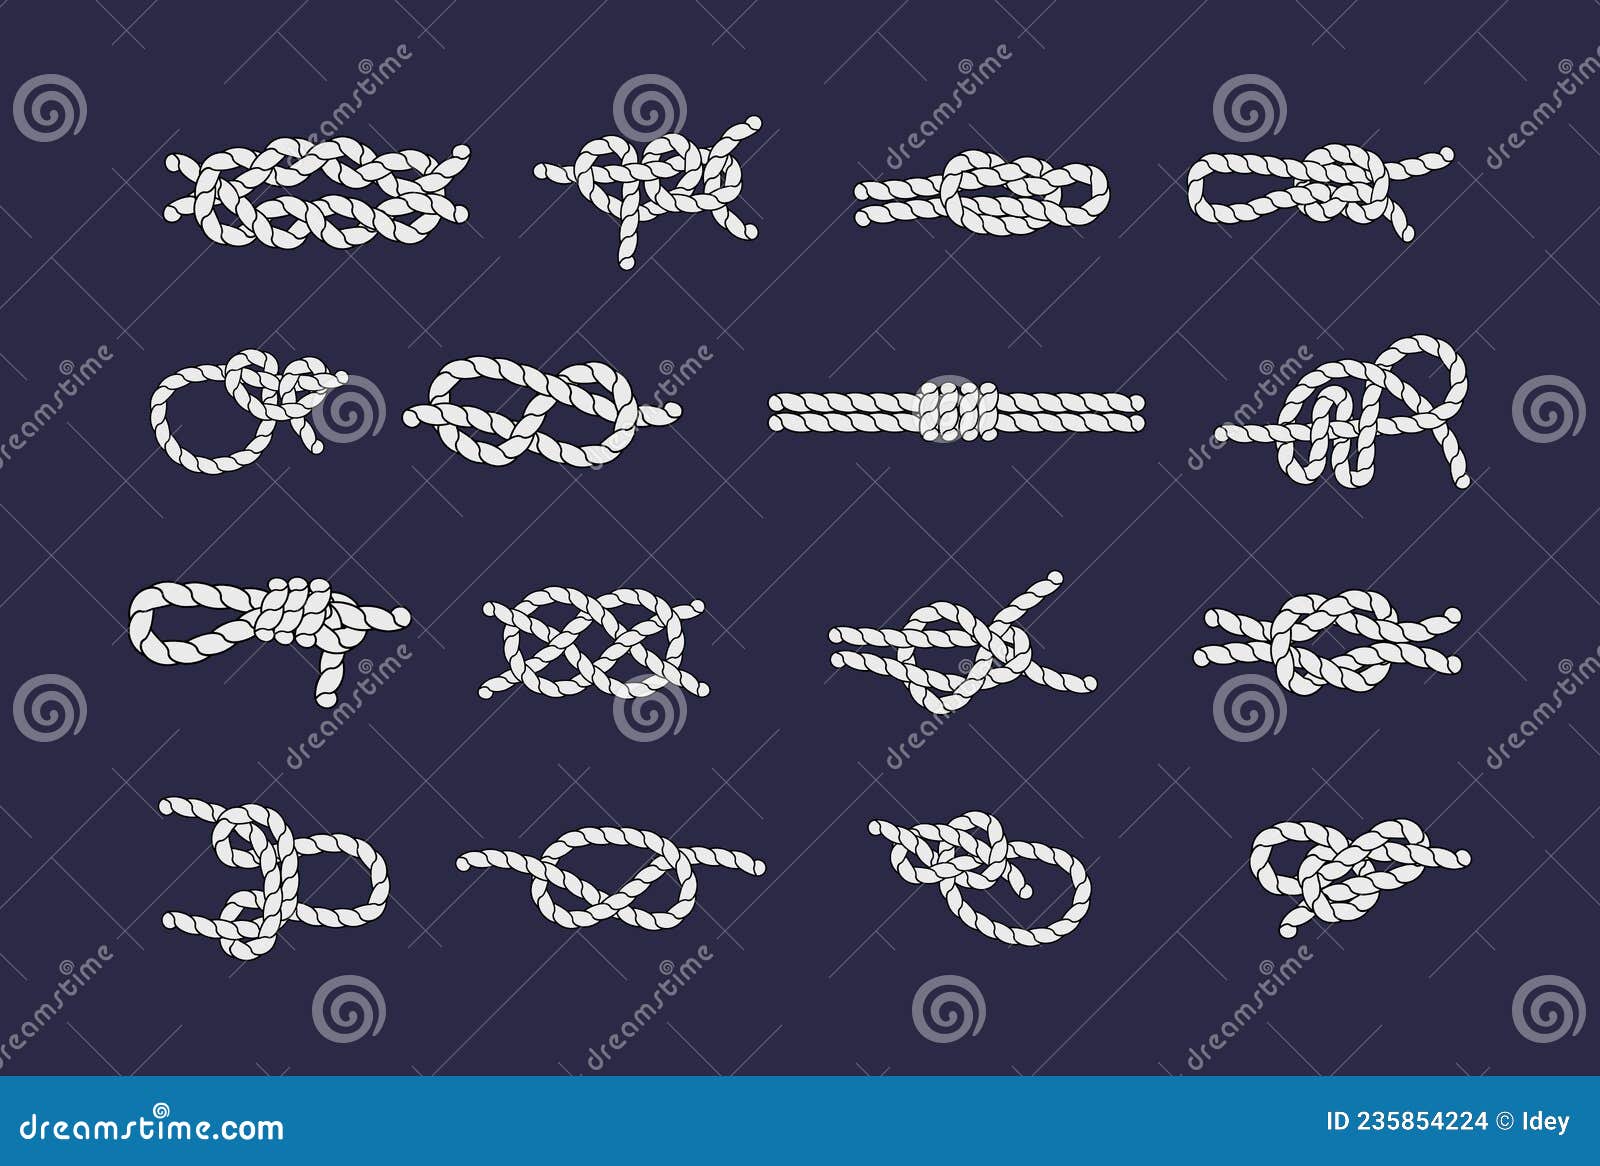 Sea Rope Knots and Loops Set. Marine Rope and Sailors Ship Knot